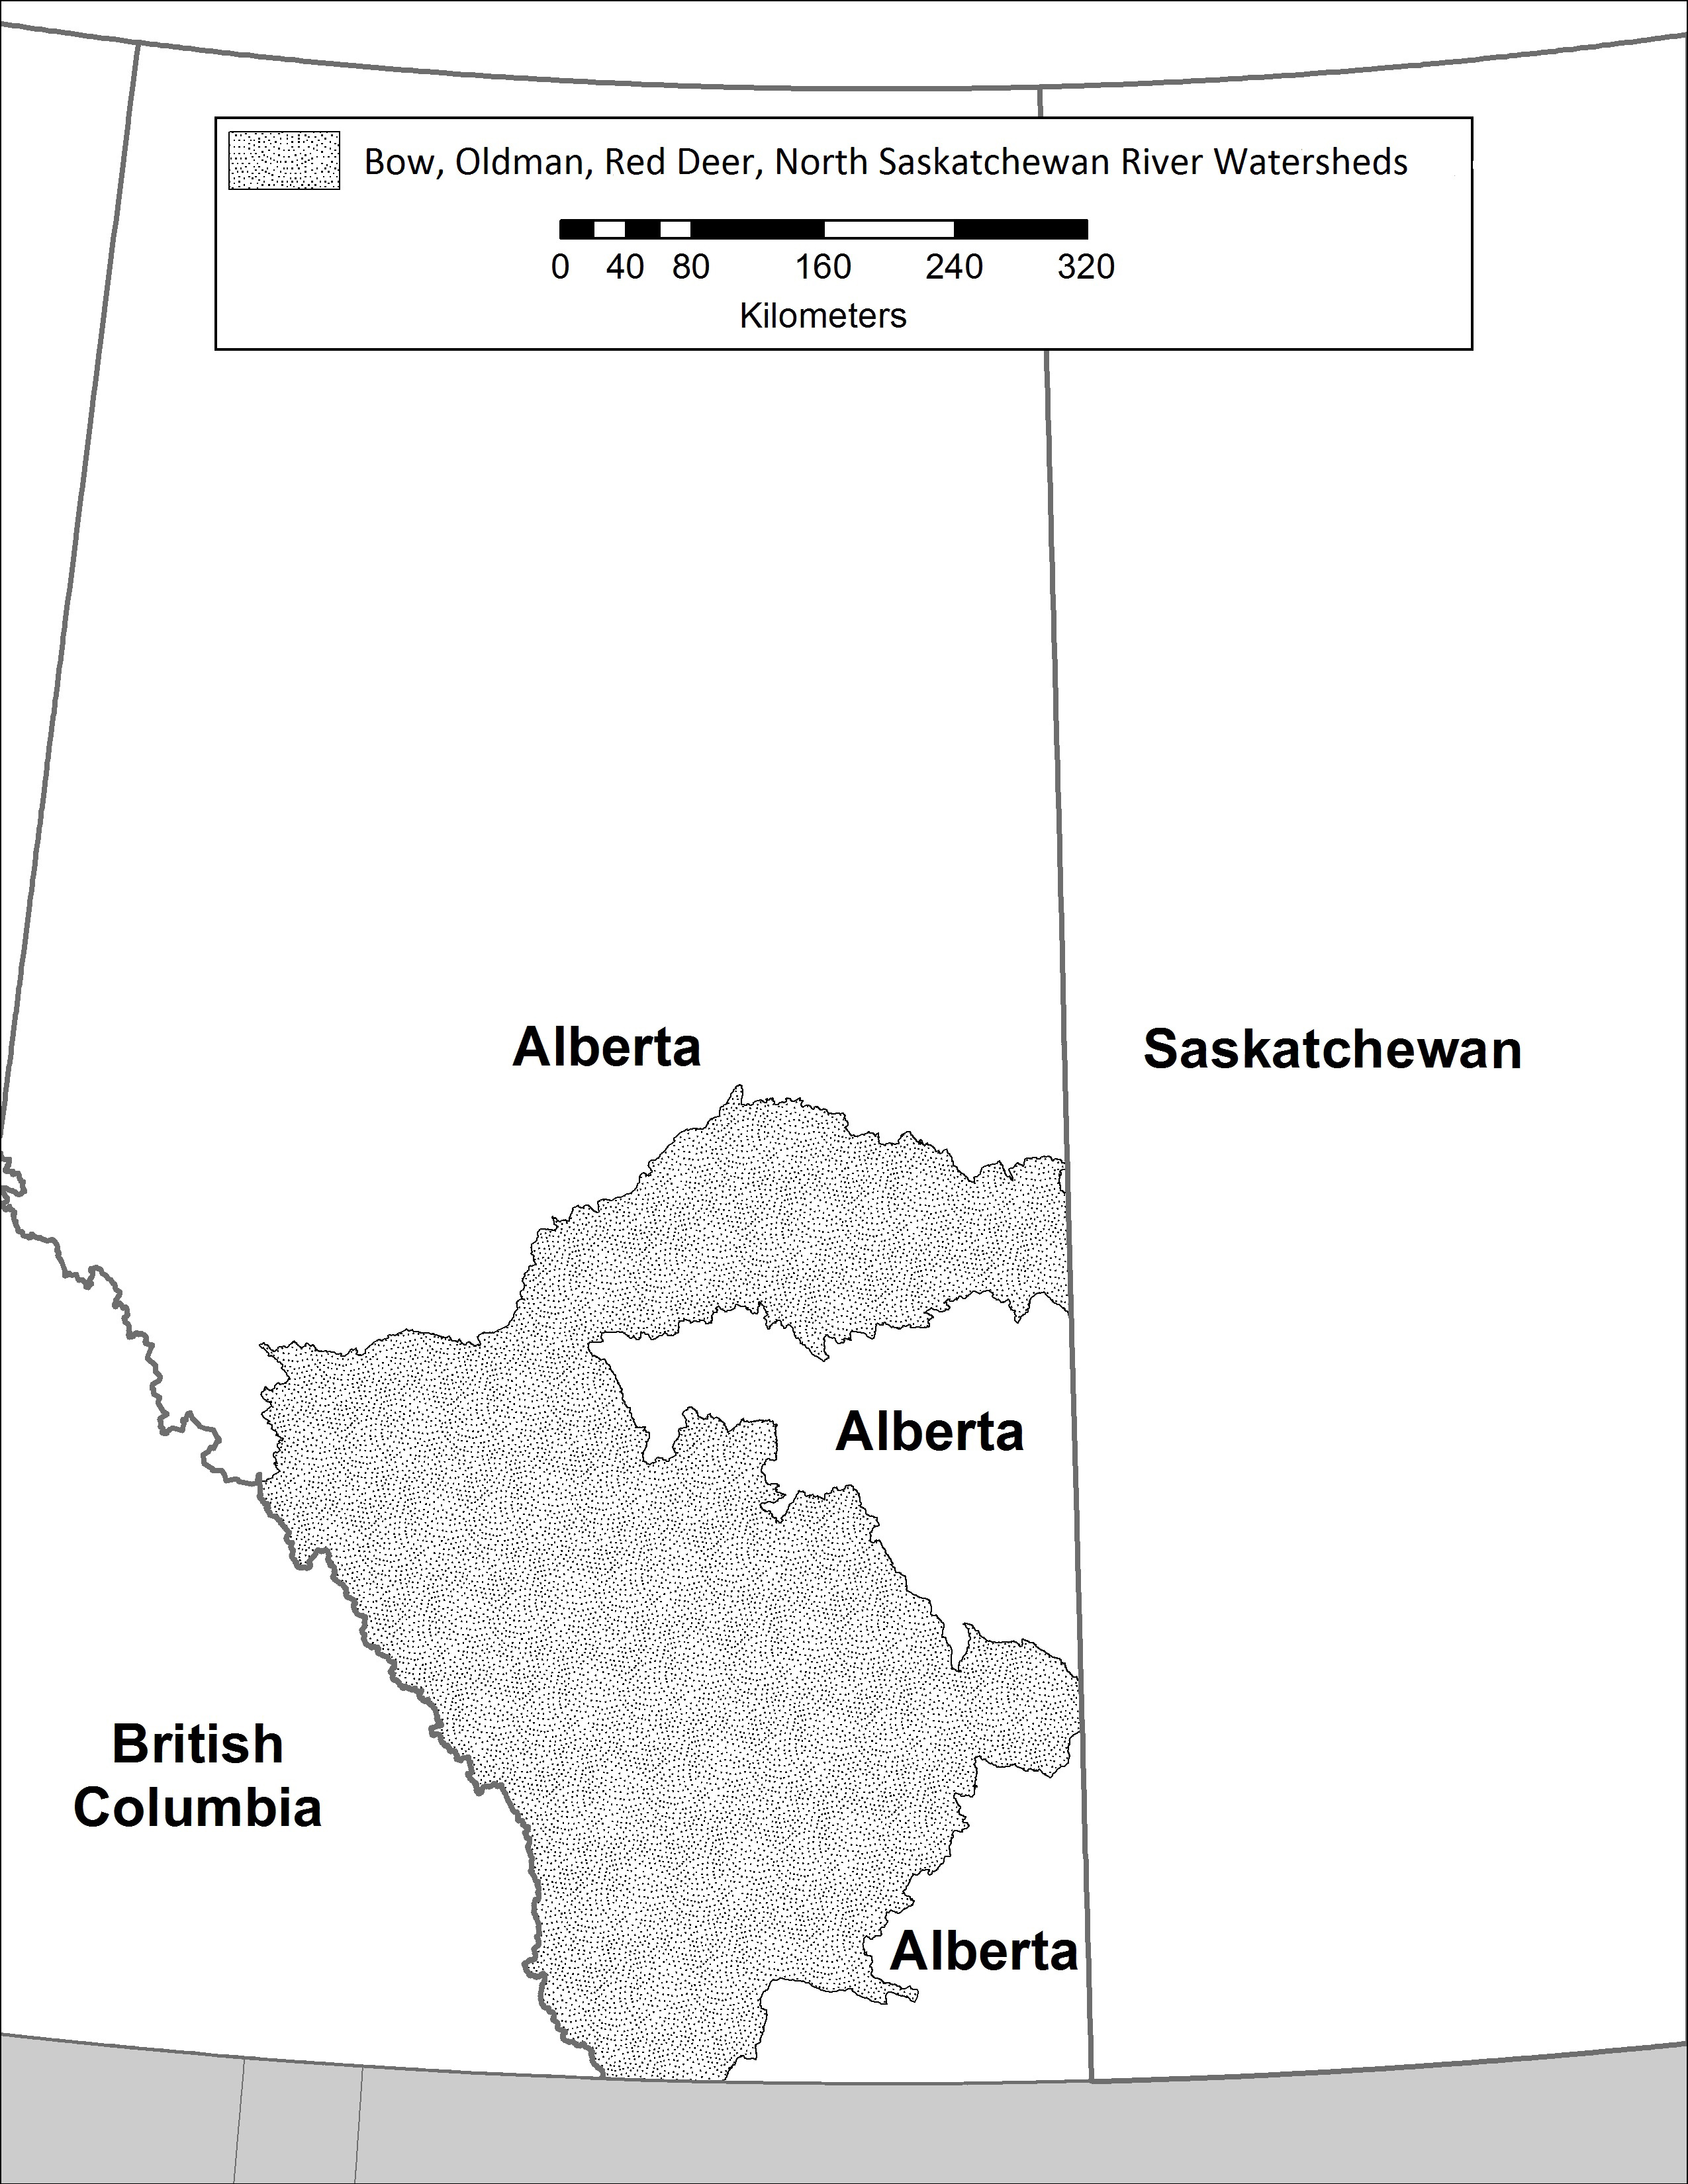 Alberta map. Description follows.